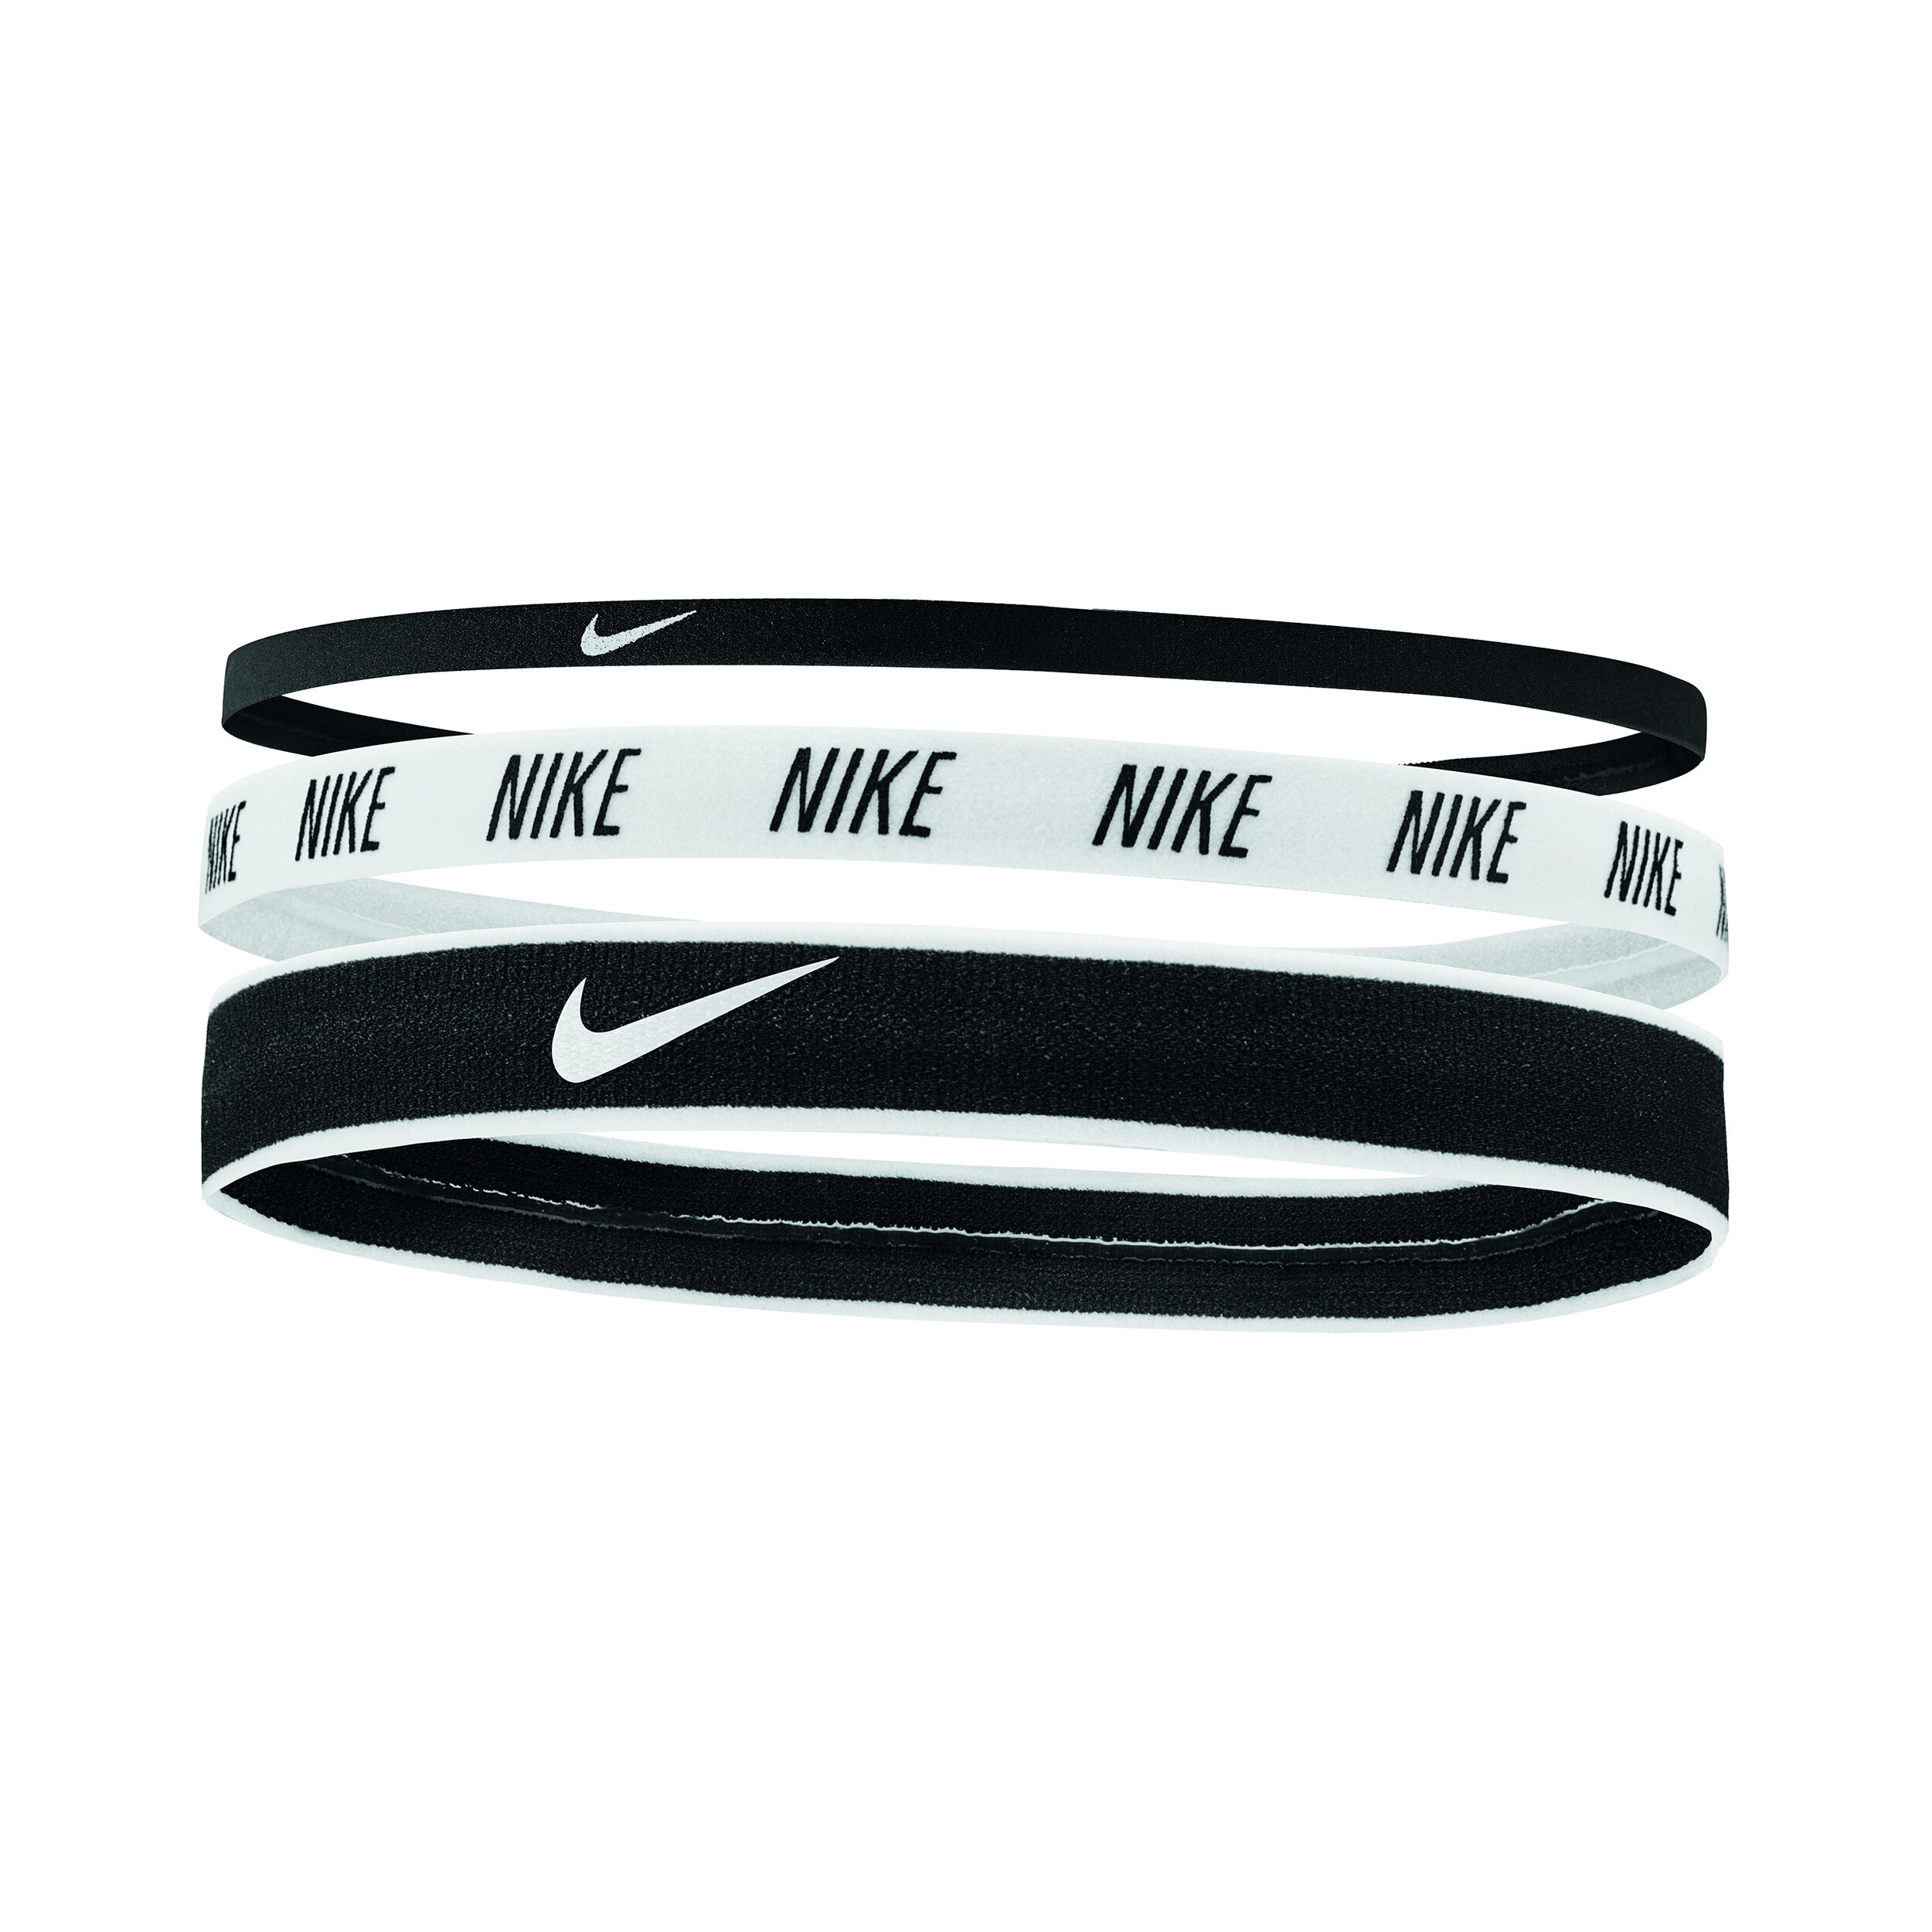 Резинка найк. Повязка на голову Nike Mixed width Headbands 3 белая. Повязка на голову Nike Printed Headbands - White / Black. Резинка для волос Nike. Спортивный ободок Nike.